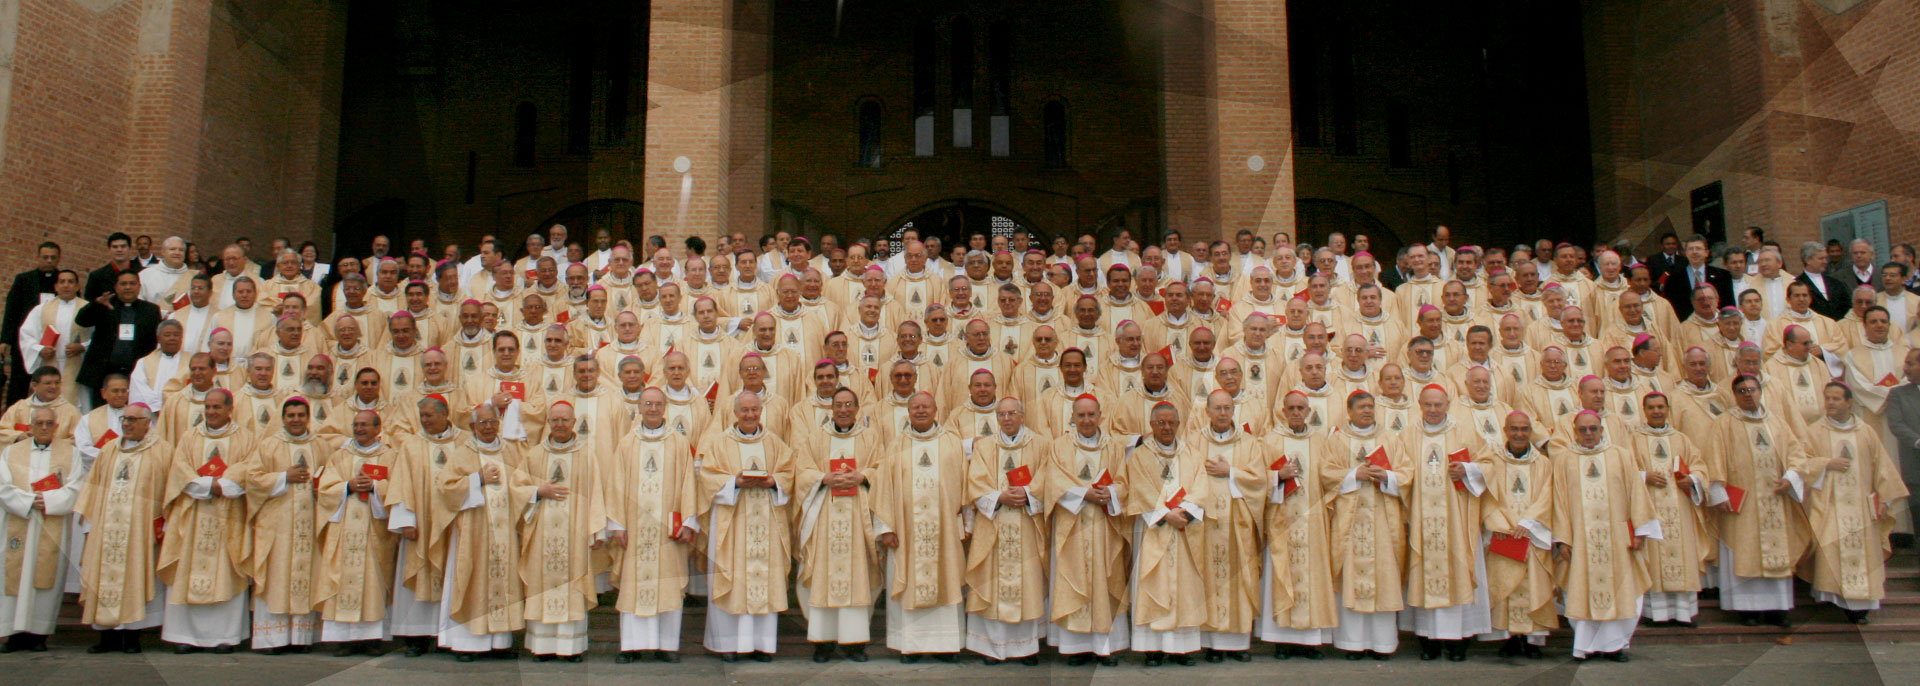 Obispos del continente: sinodalidad transversal